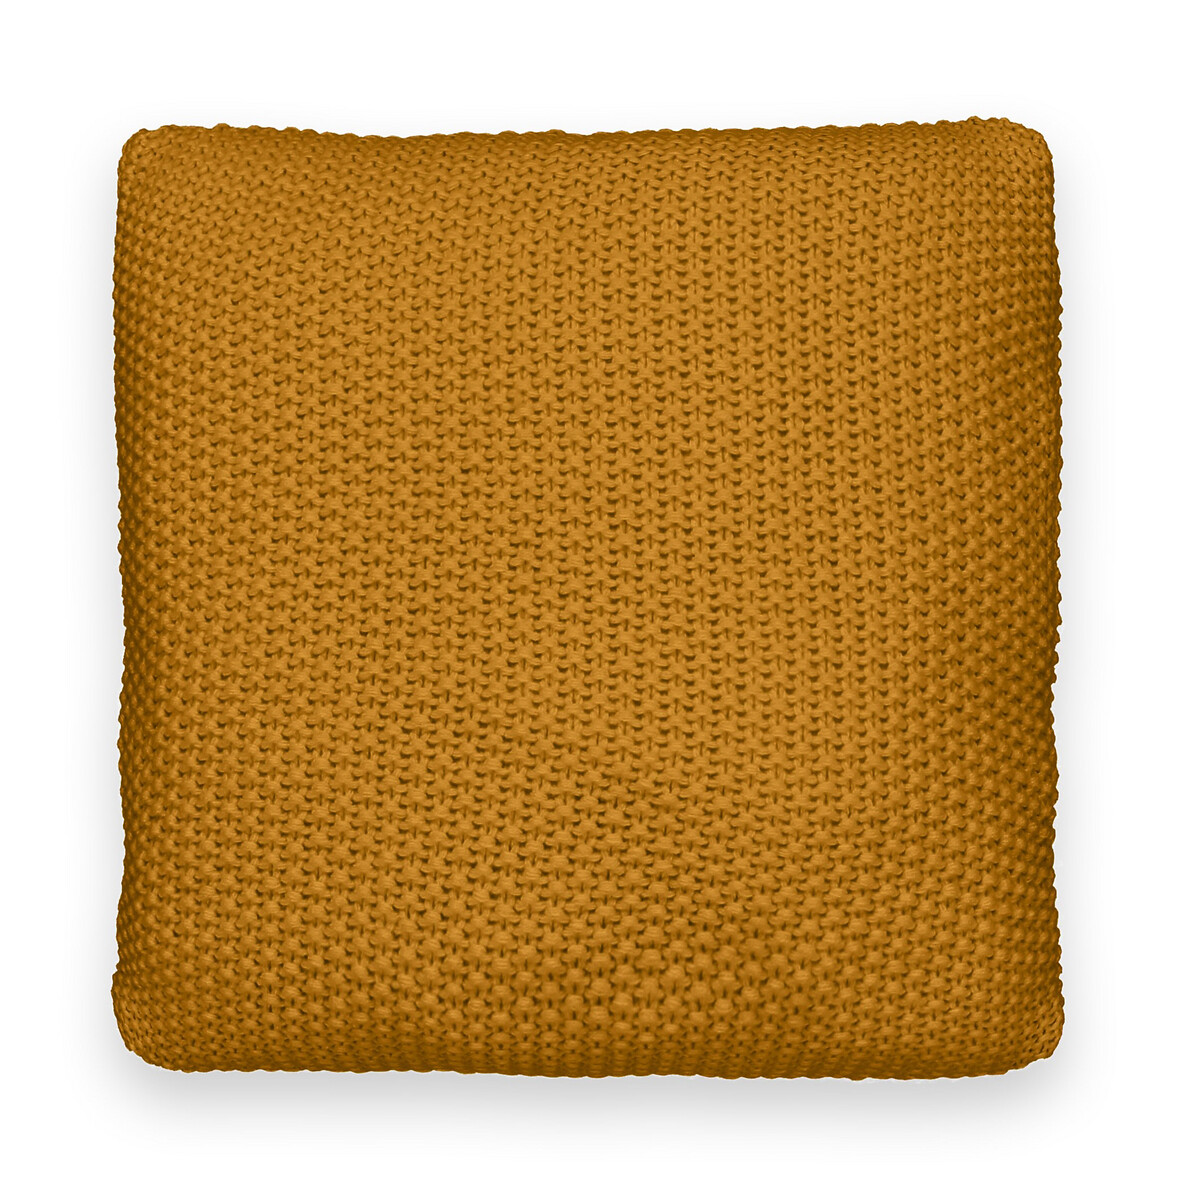 Чехол LaRedoute На подушку-валик из трикотажа WESTPORT 45 x 45 см каштановый, размер 45 x 45 см - фото 2